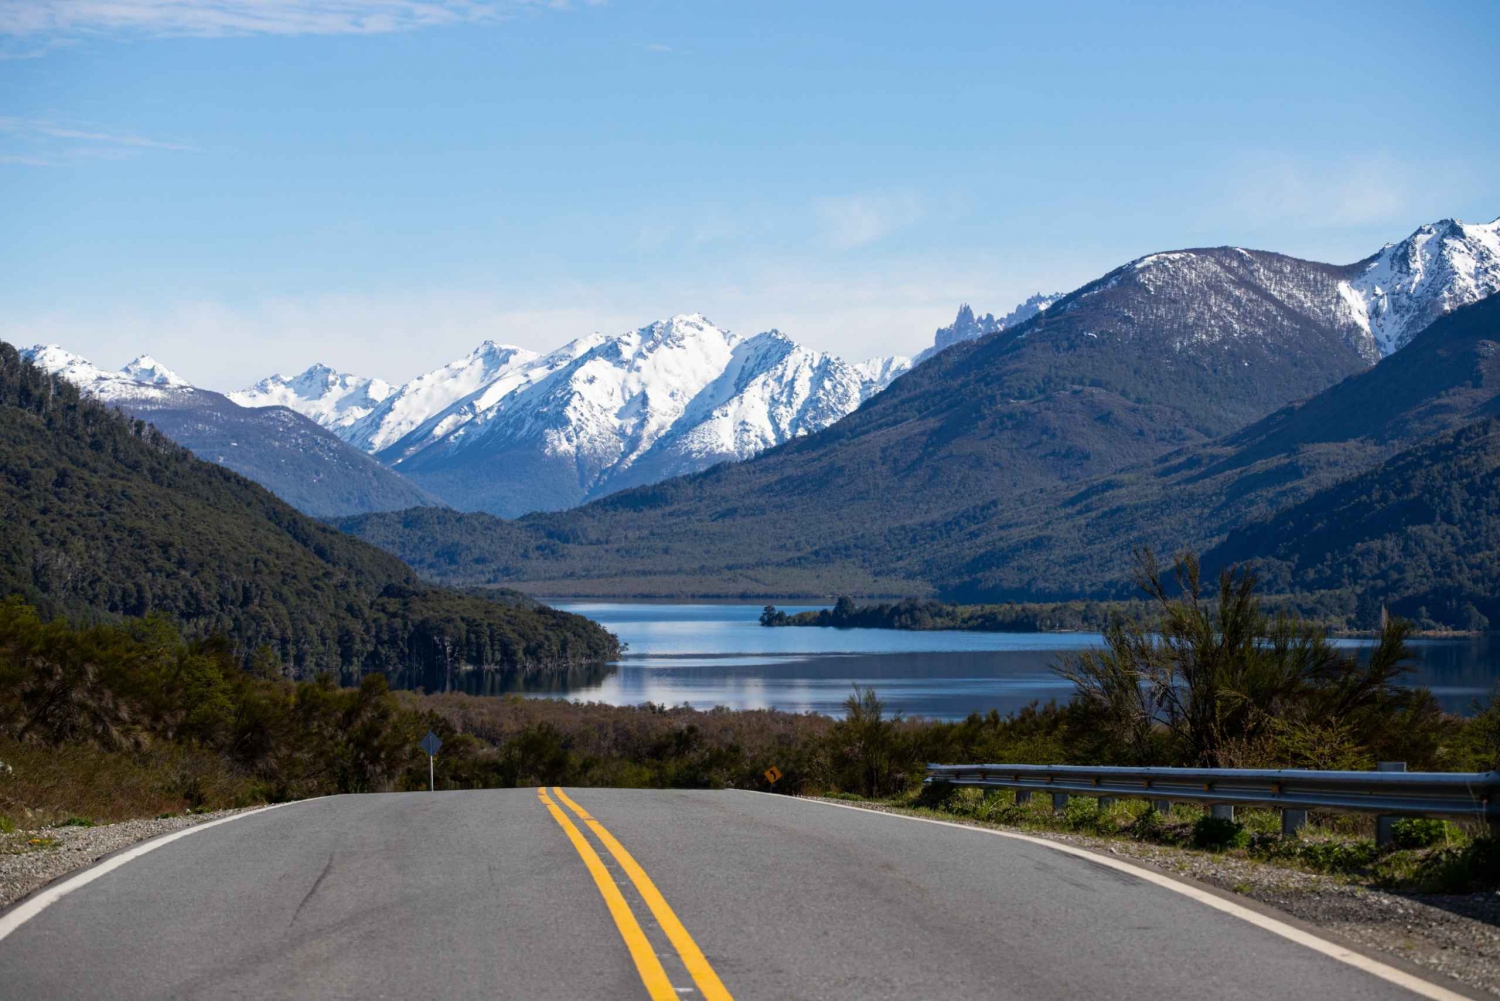 Bariloche: Heldagsutflykt till El Bolsón och Puelosjön